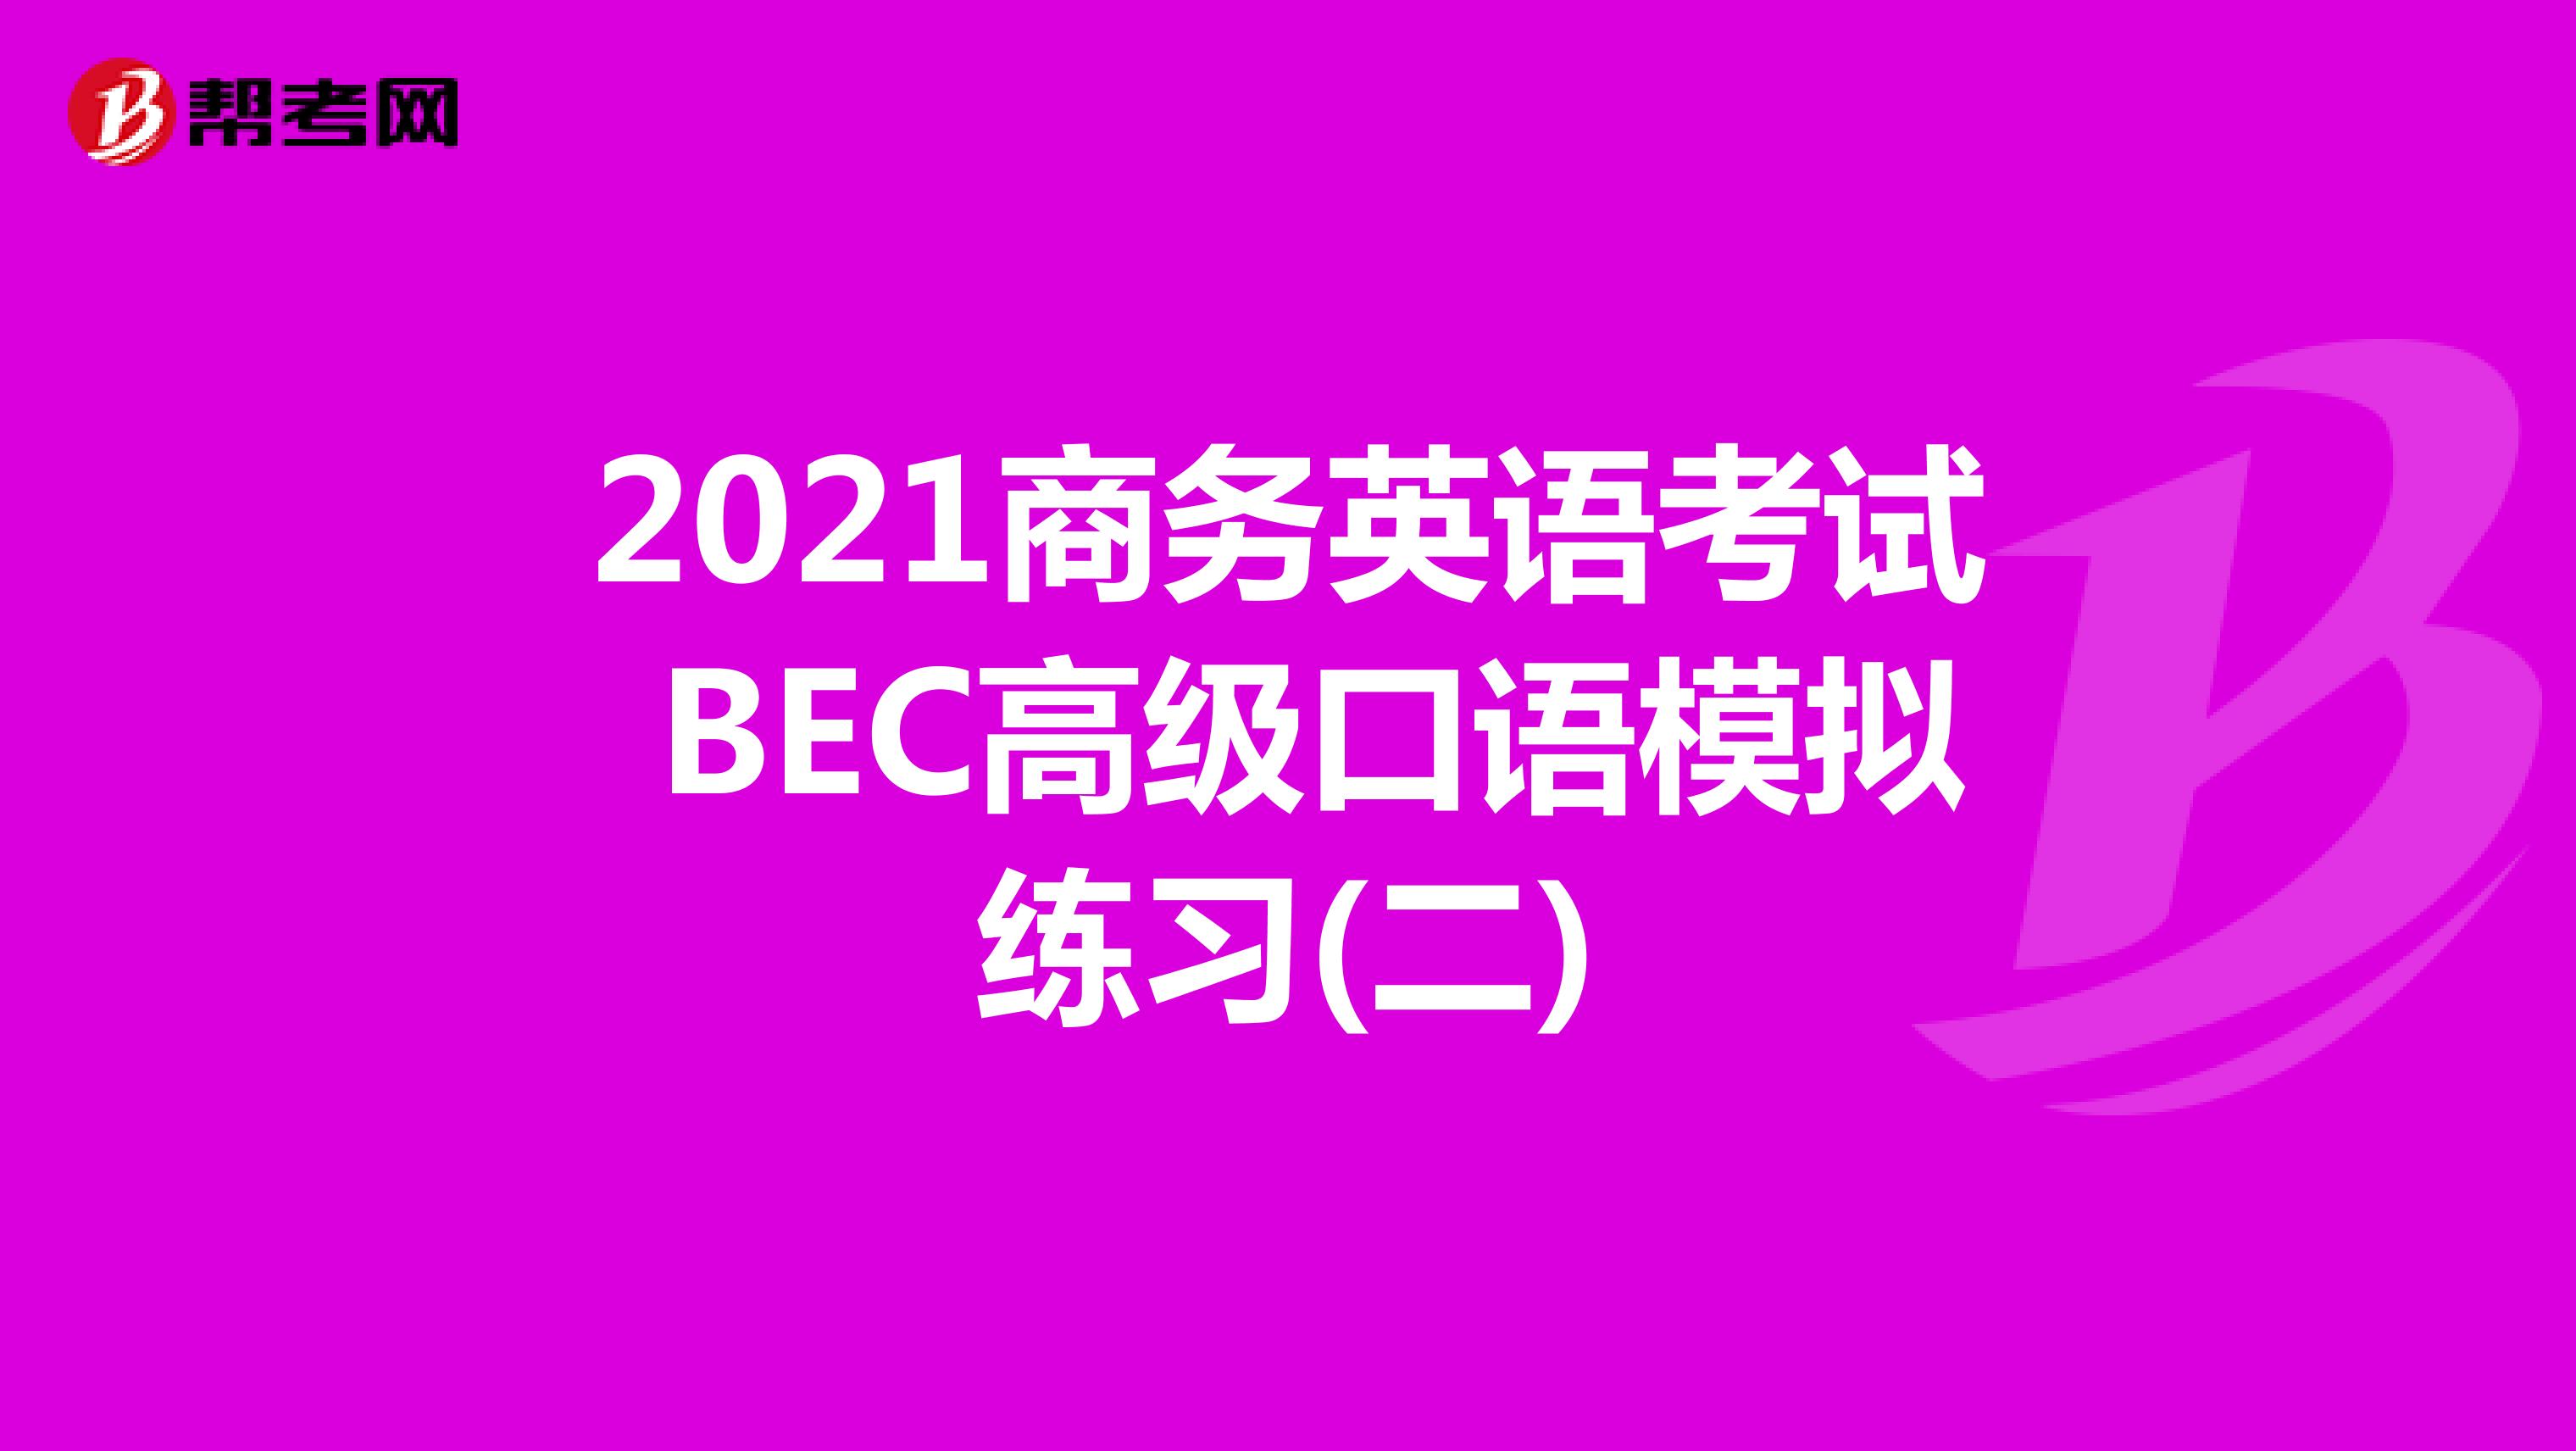 2021年商务英语考试BEC高级口语模拟练习(二)